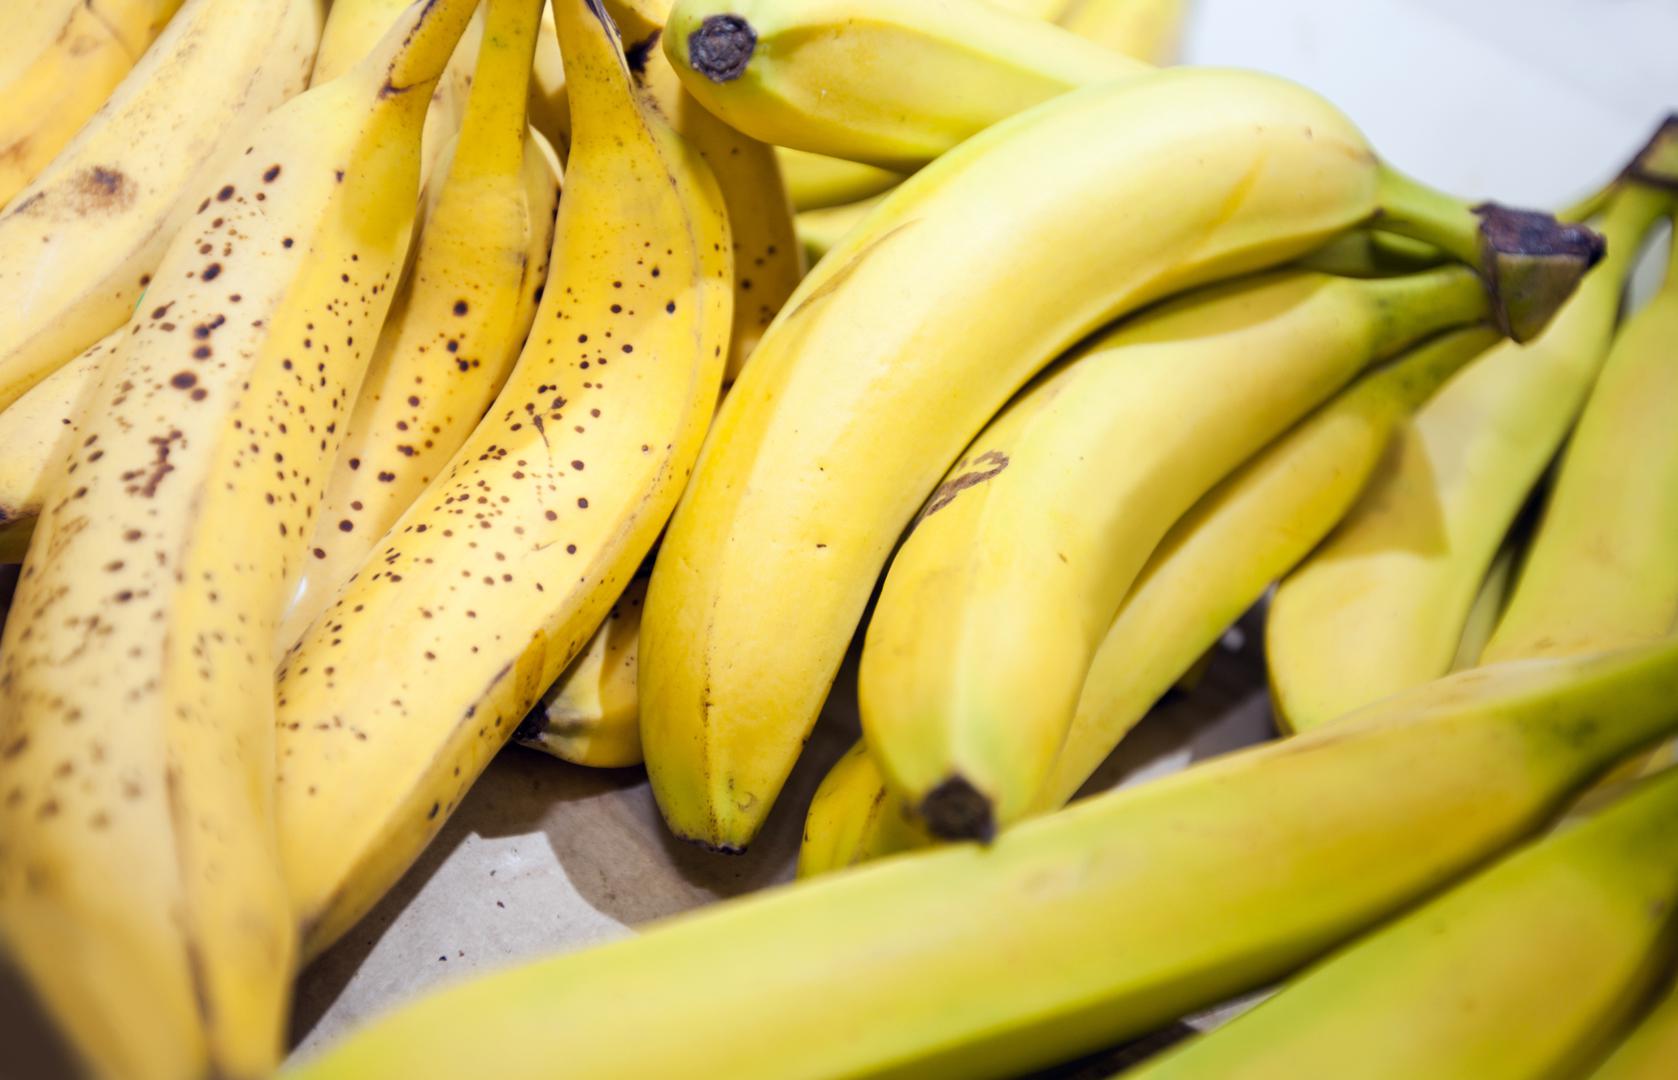 Peteljke banana zamotajte u plastičnu foliju i usporit ćete dozrijevanje banana, pojašnjava Dana Gunders, autorica kuhinjskog priručnika Waste-Free Kitchen Handbook. 